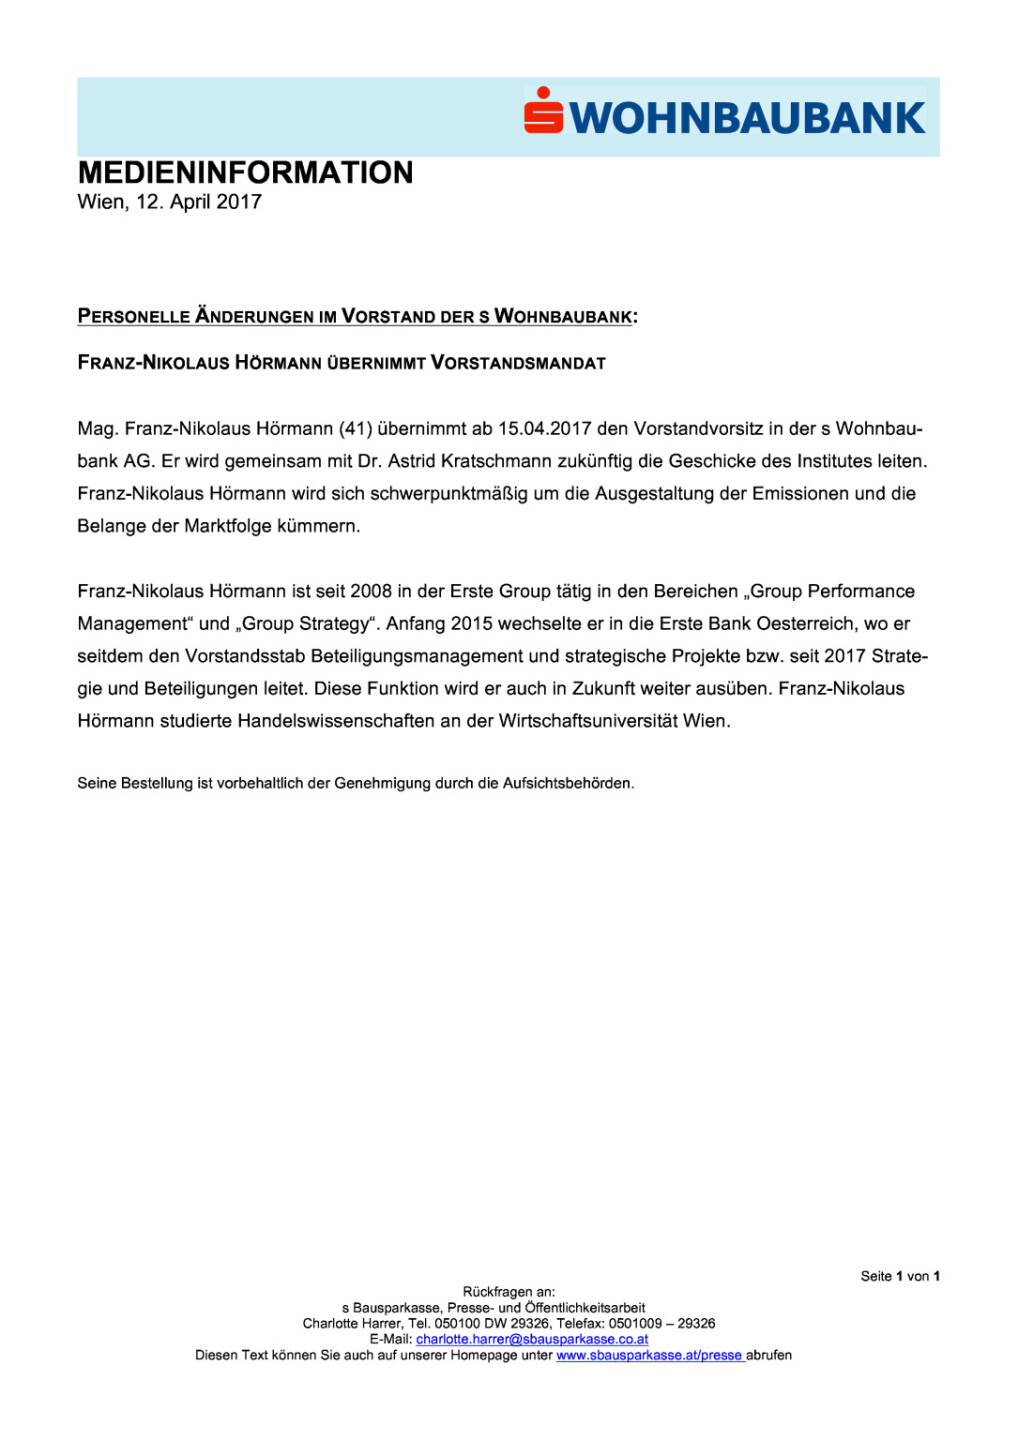  Personelle Änderungen im Vorstand der s Wohnbaubank: Franz-Nikolaus Hörmann übernimmt Vorstandsmandat, Seite 1/1, komplettes Dokument unter http://boerse-social.com/static/uploads/file_2207__personelle_anderungen_im_vorstand_der_s_wohnbaubank_franz-nikolaus_hormann_ubernimmt_vorstandsmandat.pdf